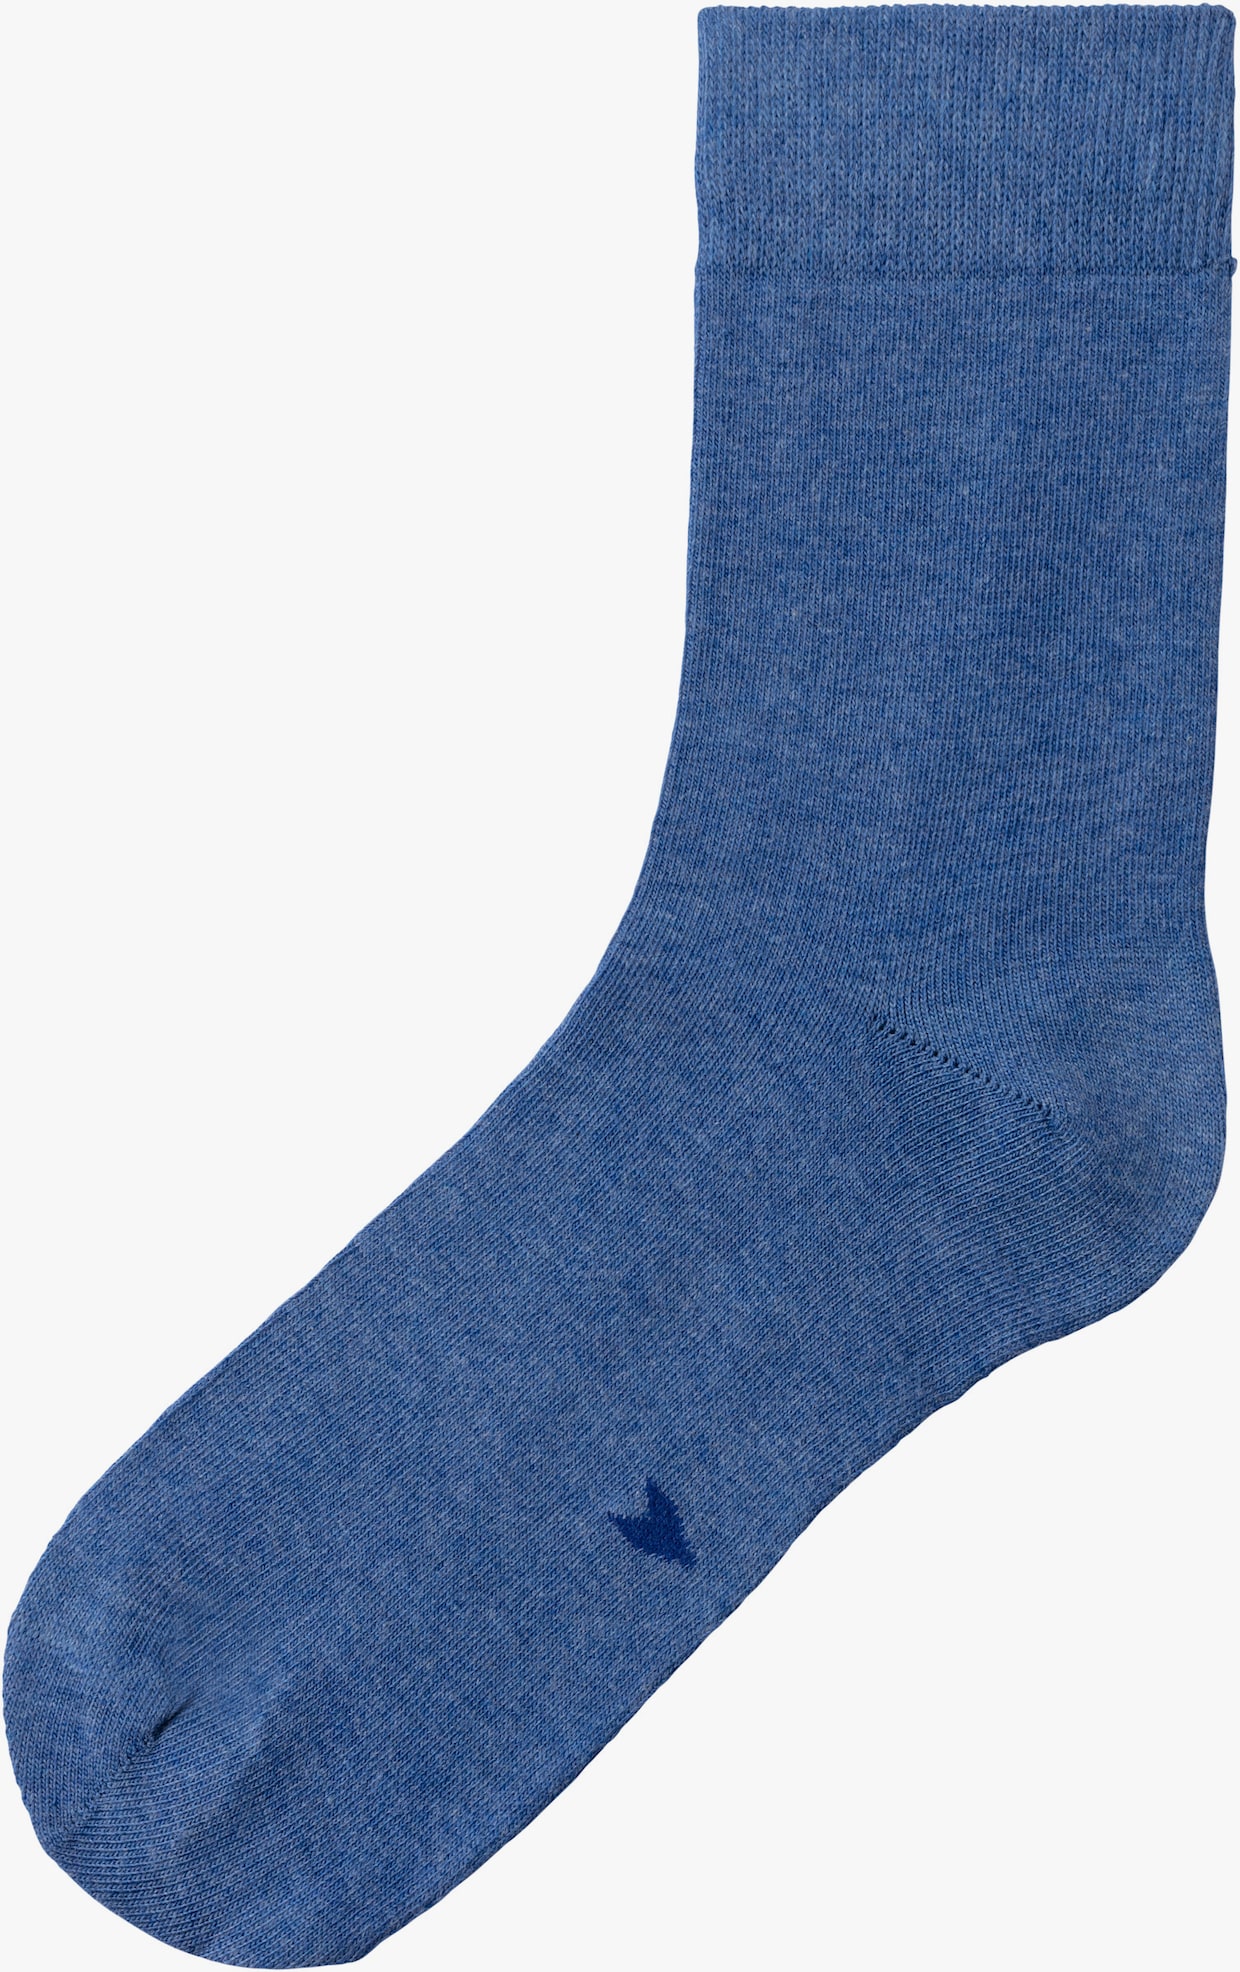 H.I.S chaussettes basiques - 2x noir, 2x bleu, 2x bleu chiné, 2x jean chiné, 2x blanc